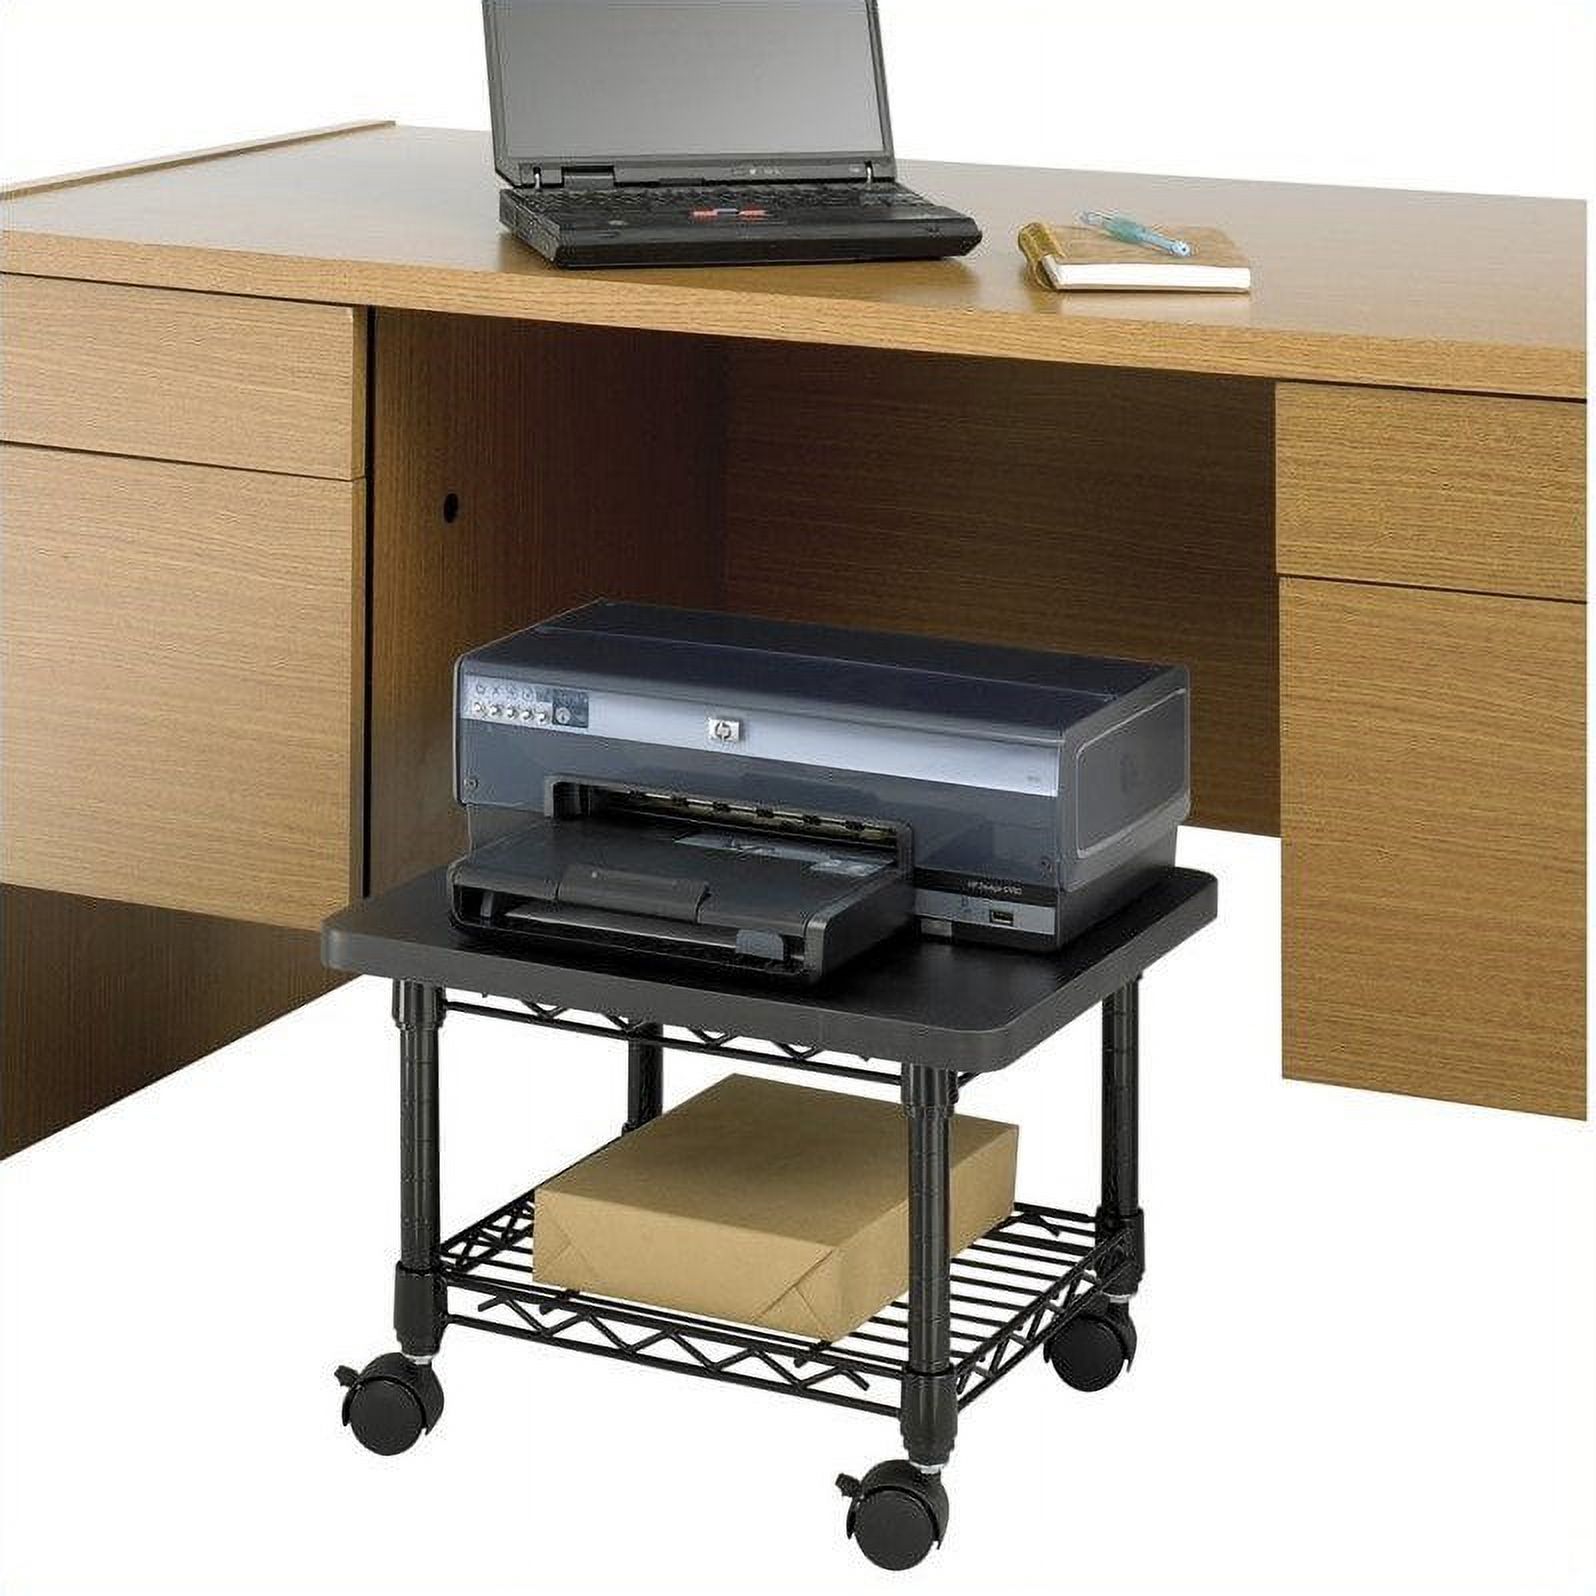 Safco Under-Desk Steel Frame Printer/Fax Stand in Black - image 2 of 7